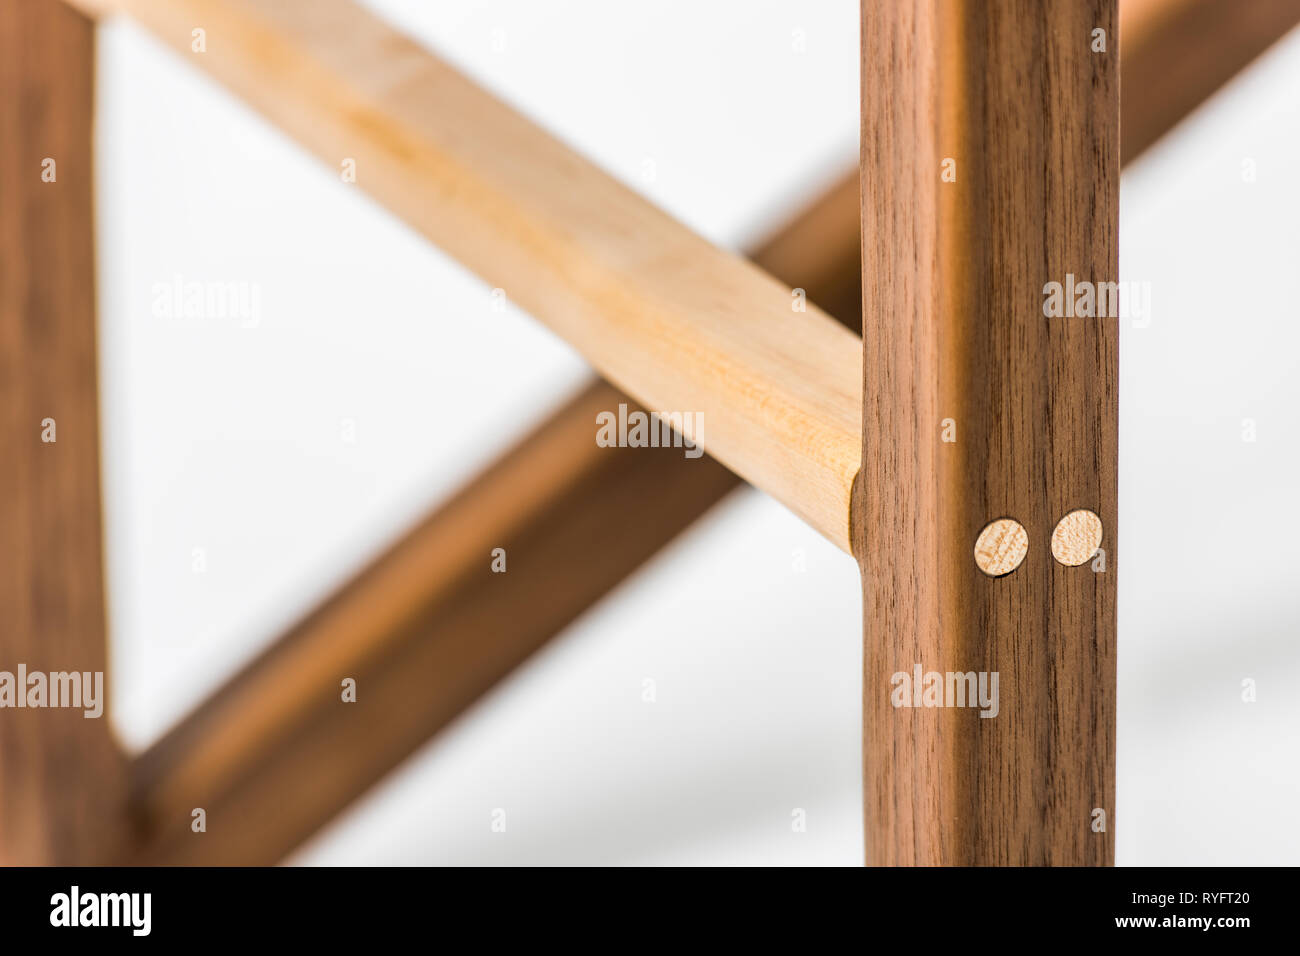 Individuell gefertigte Holzmöbel auf weißem Hintergrund Stockfoto